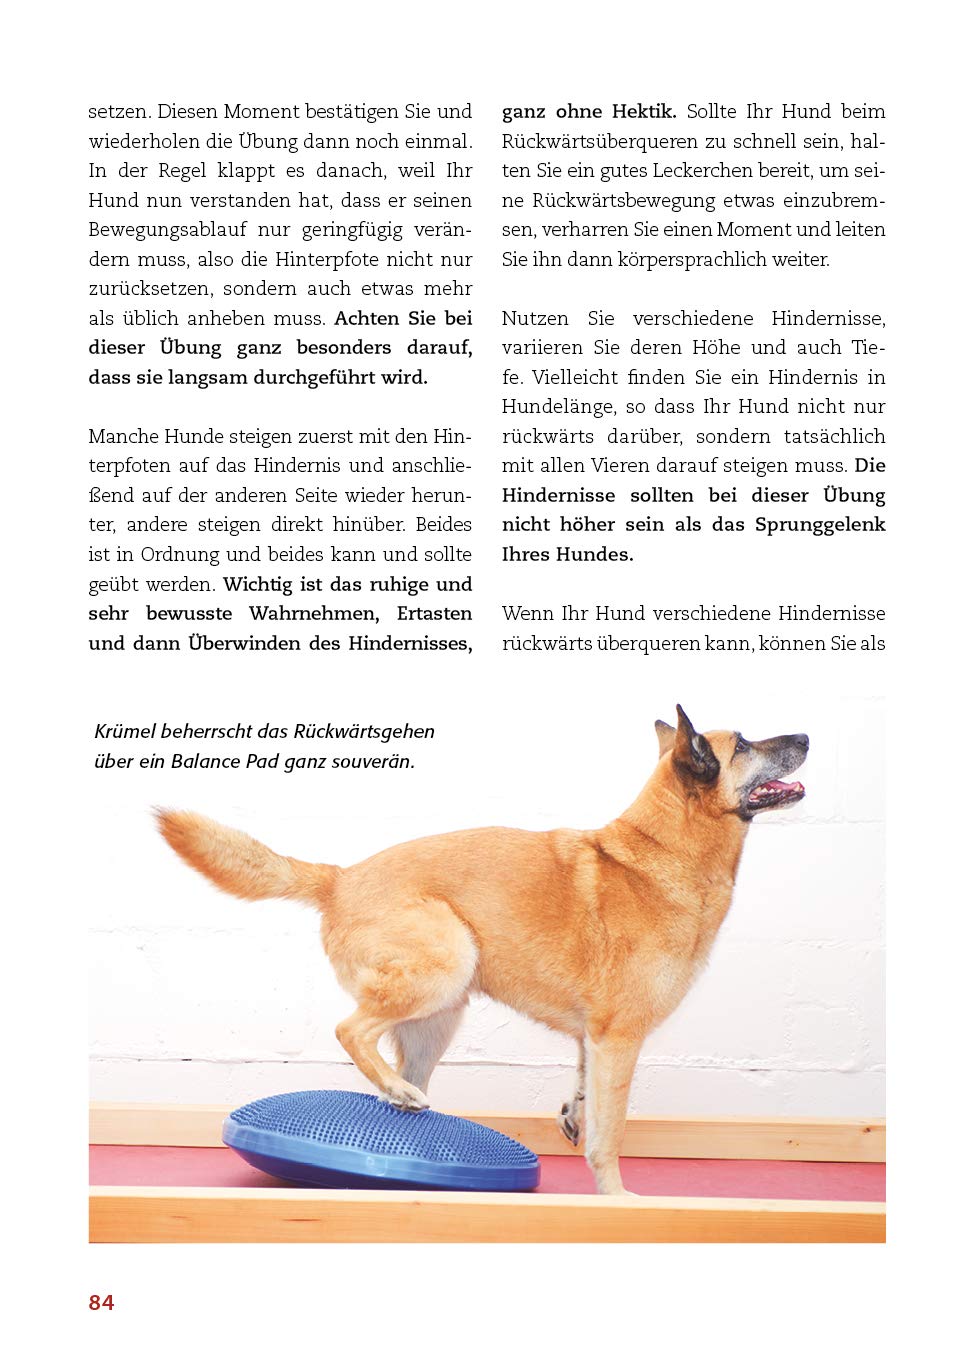 Animal Learn - Körperarbeit mit dem Hund: Koordination verbessern, Balance stärken, Bindung vertiefen [Silke Stricker]